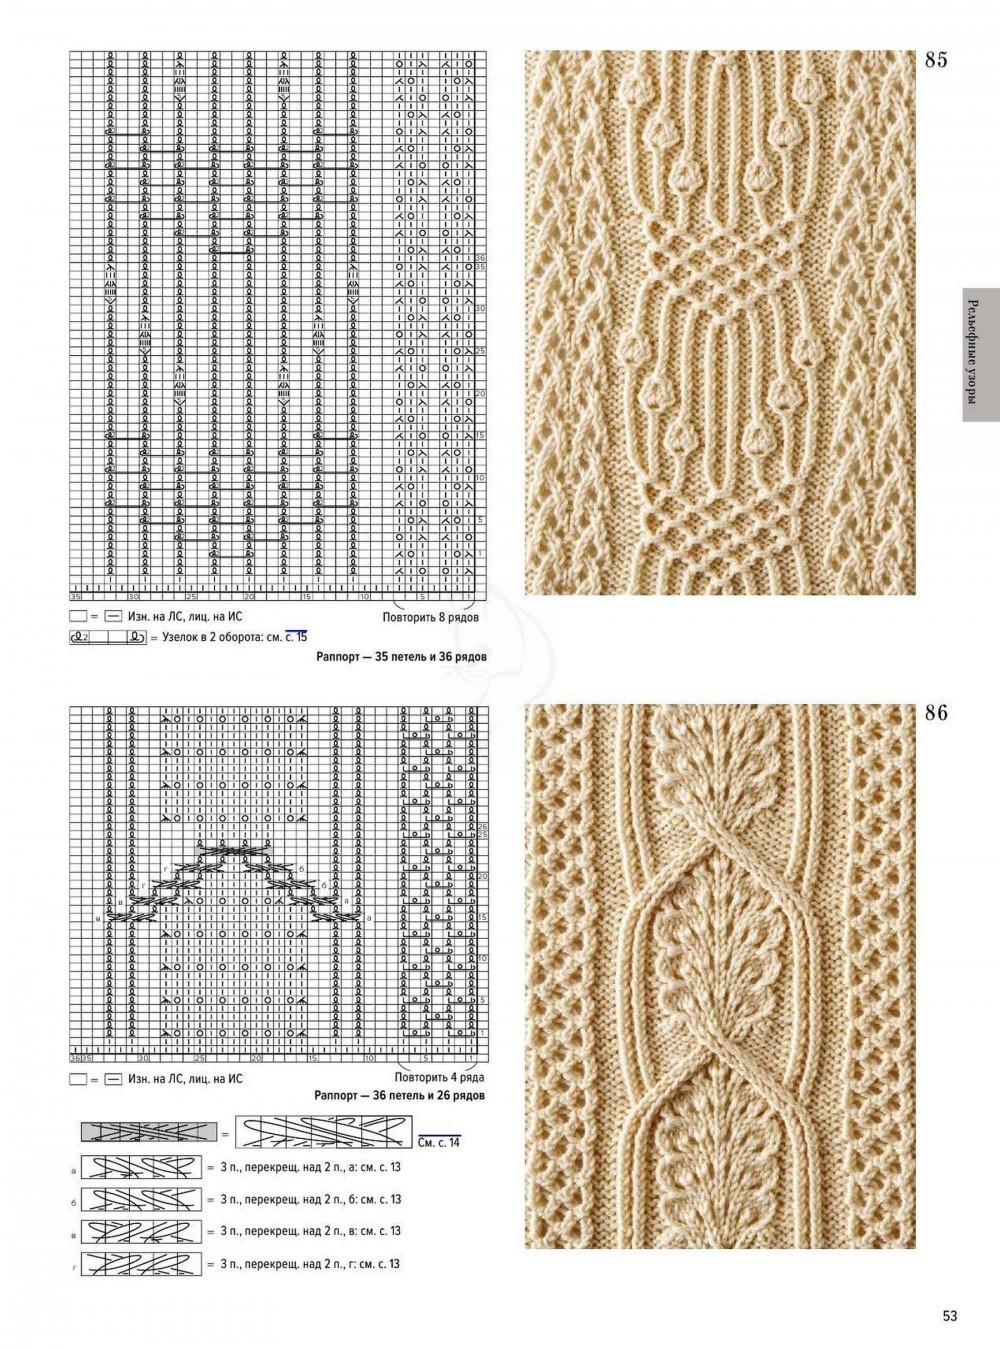 Вязание аранов спицами — схемы и узоры для начинающих с описанием вязания жгутов, кос и аранов